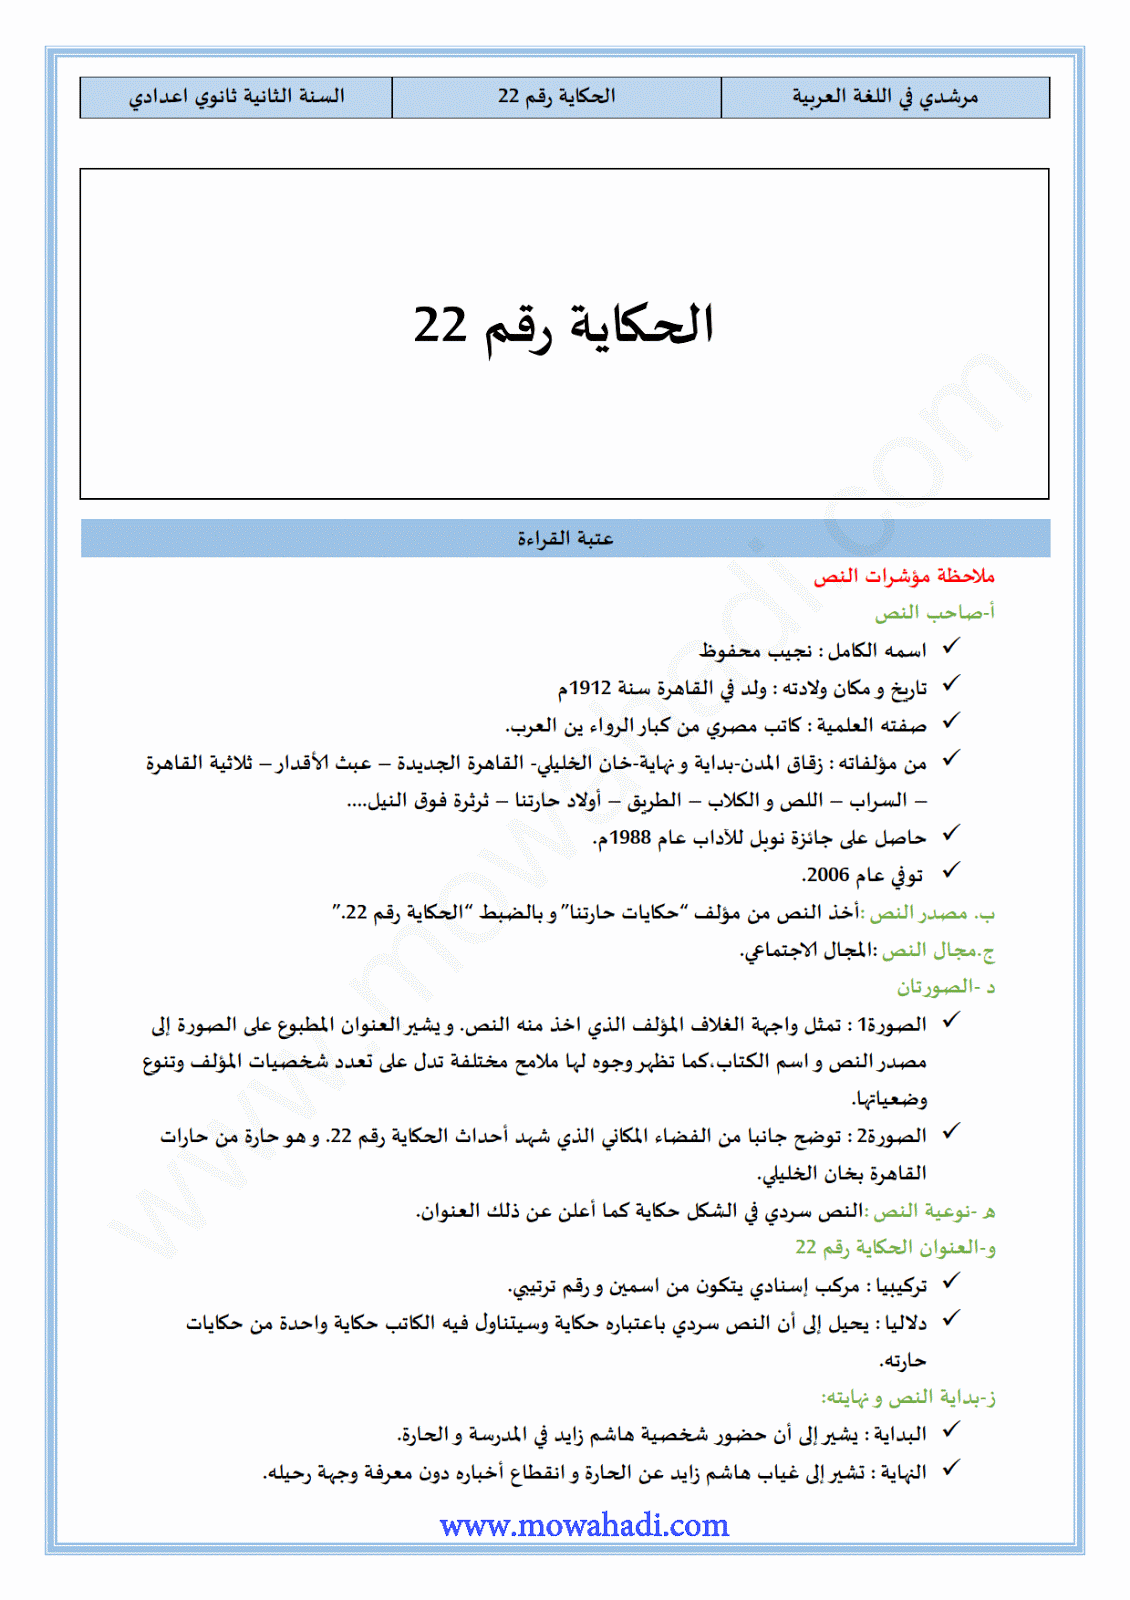 تحضير النص القرائي الحكاية رقم 22   للسنة الثانية اعدادي في مادة اللغة العربية